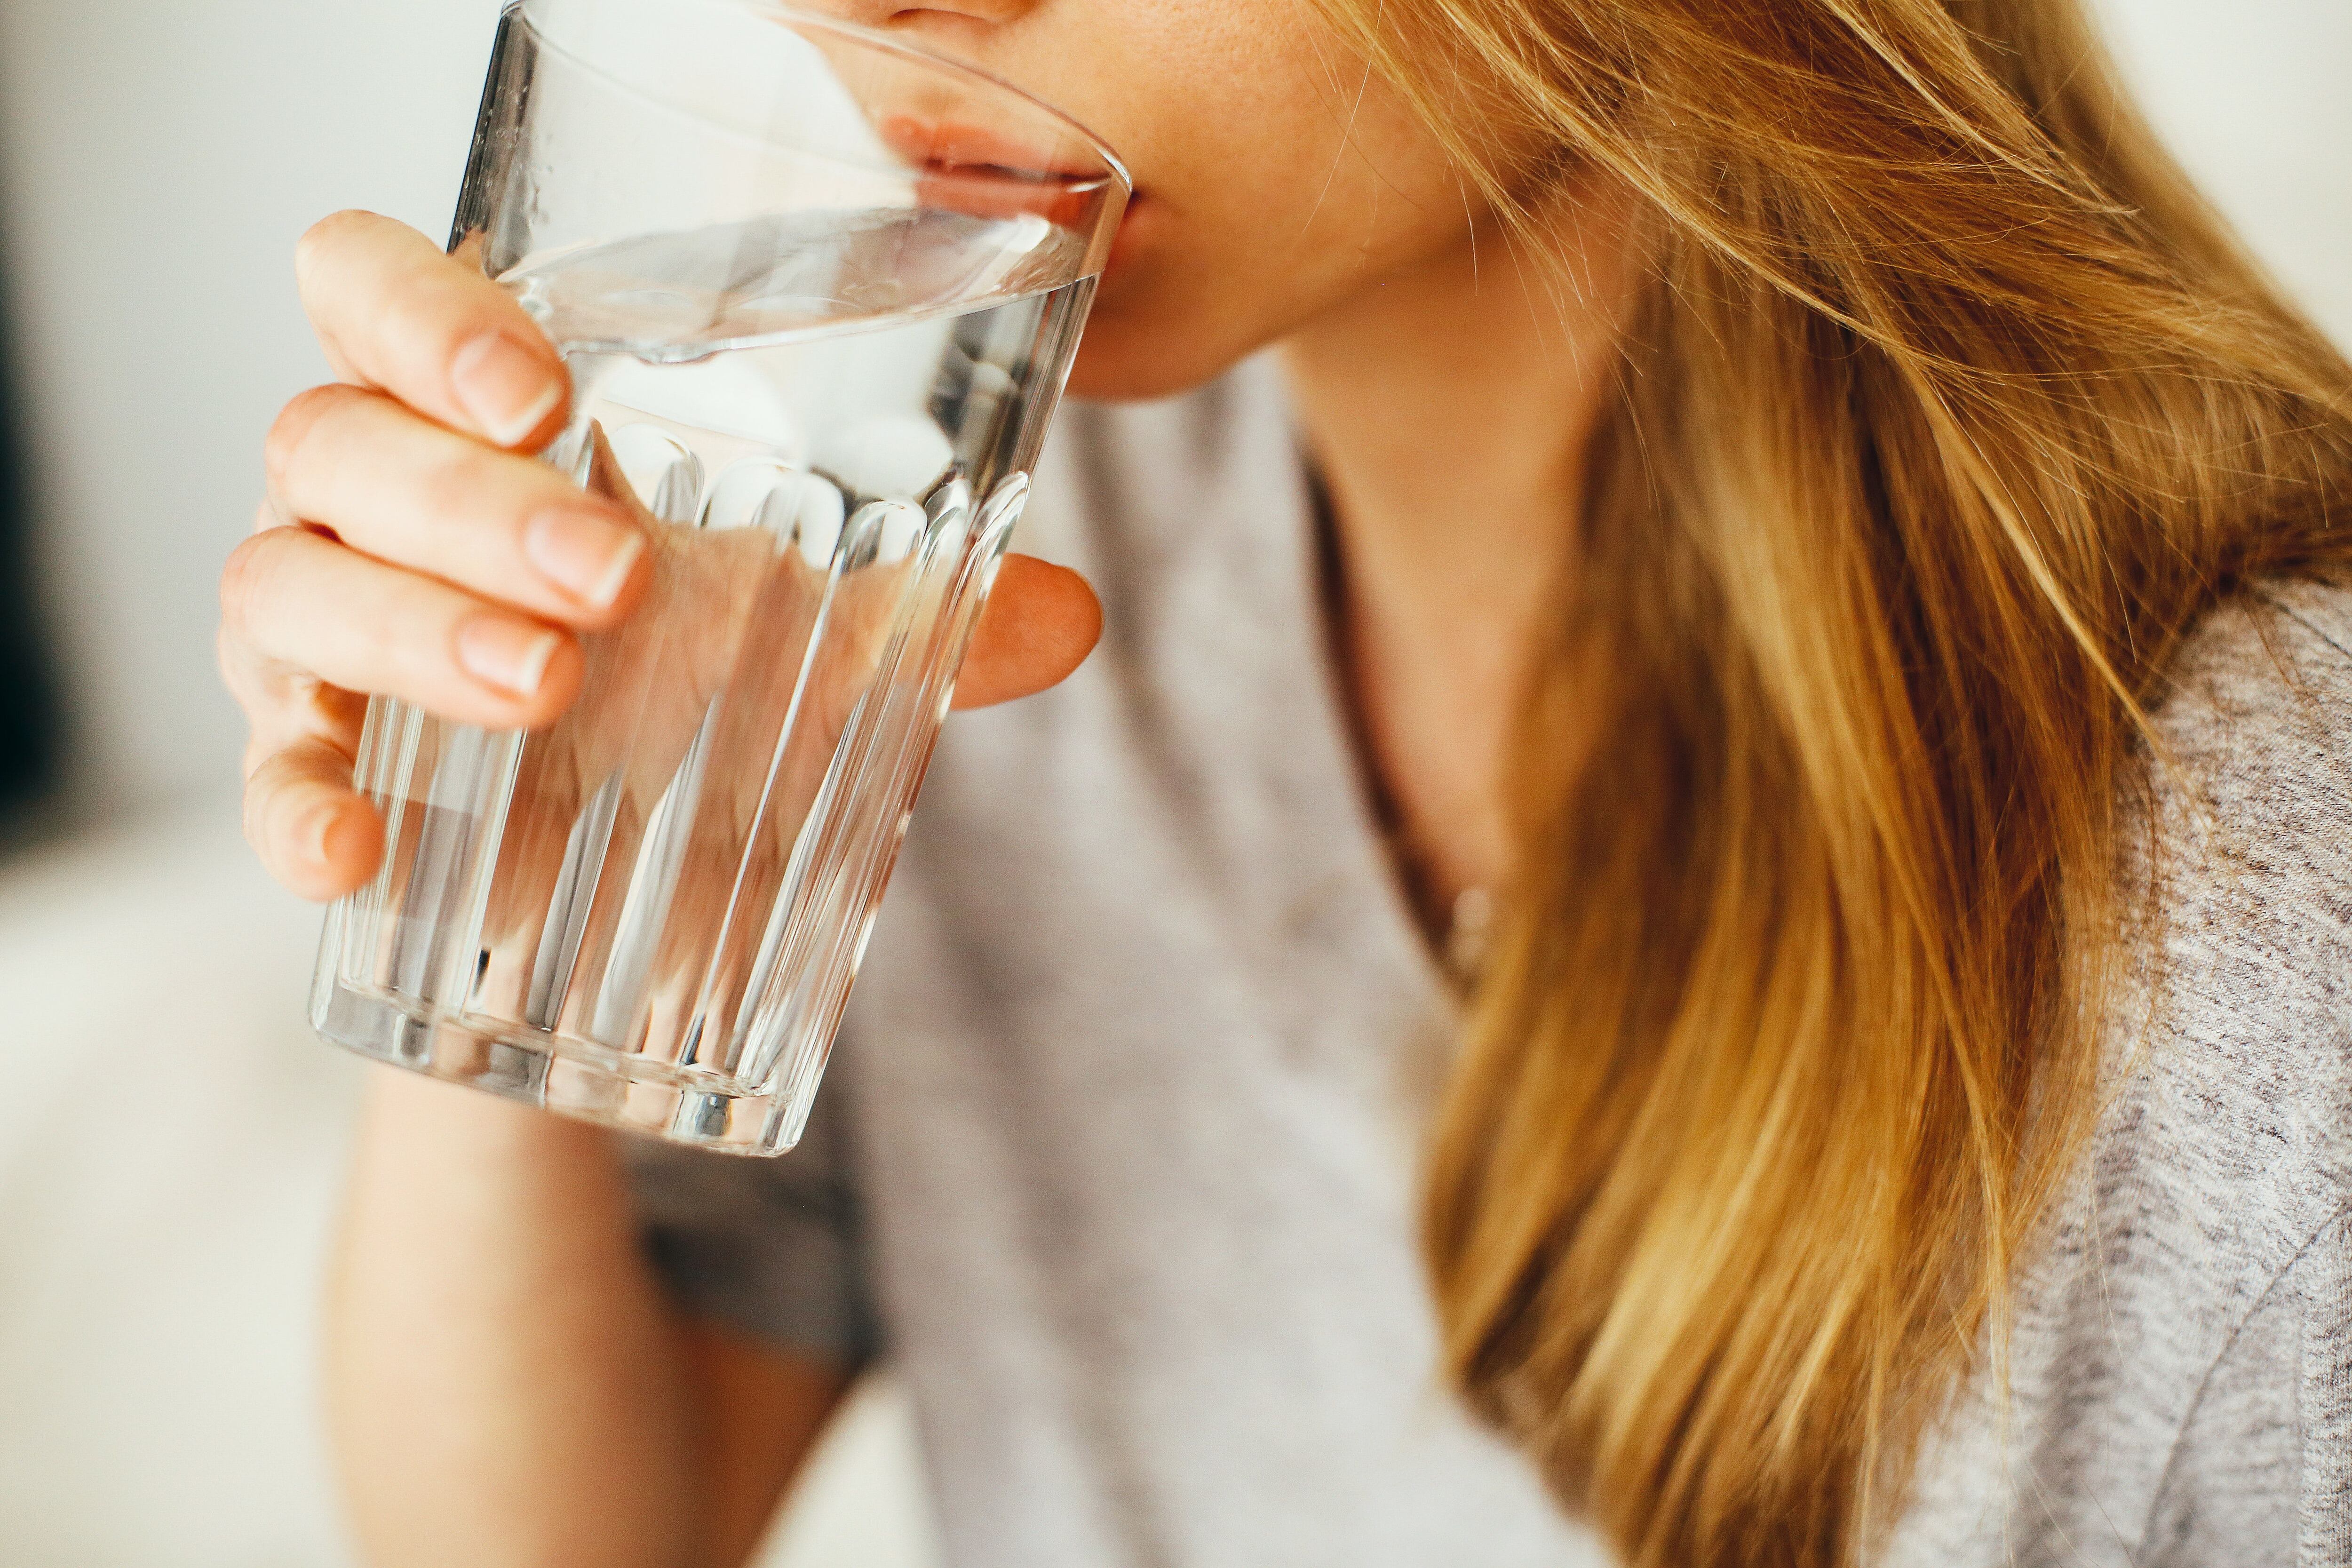 En época de verano es necesario vigilar tu hidratación. Imagen: Pexels